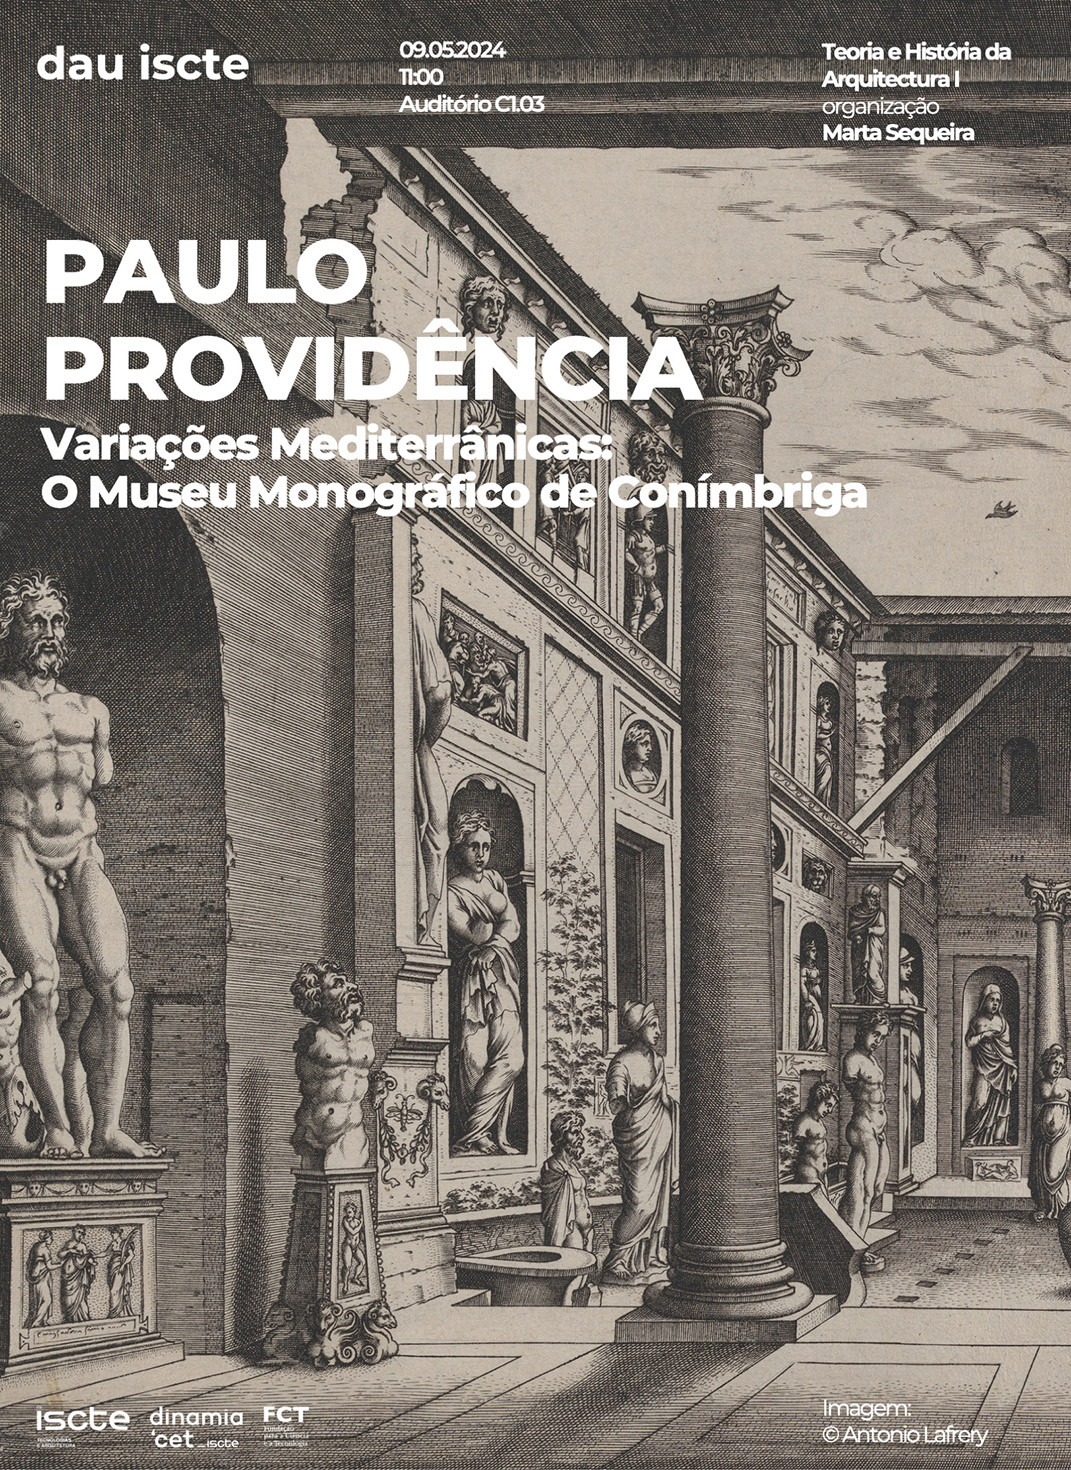 Variações Mediterrânicas: O Museu Monográfico de Conímbriga (conferência de Paulo Providência)